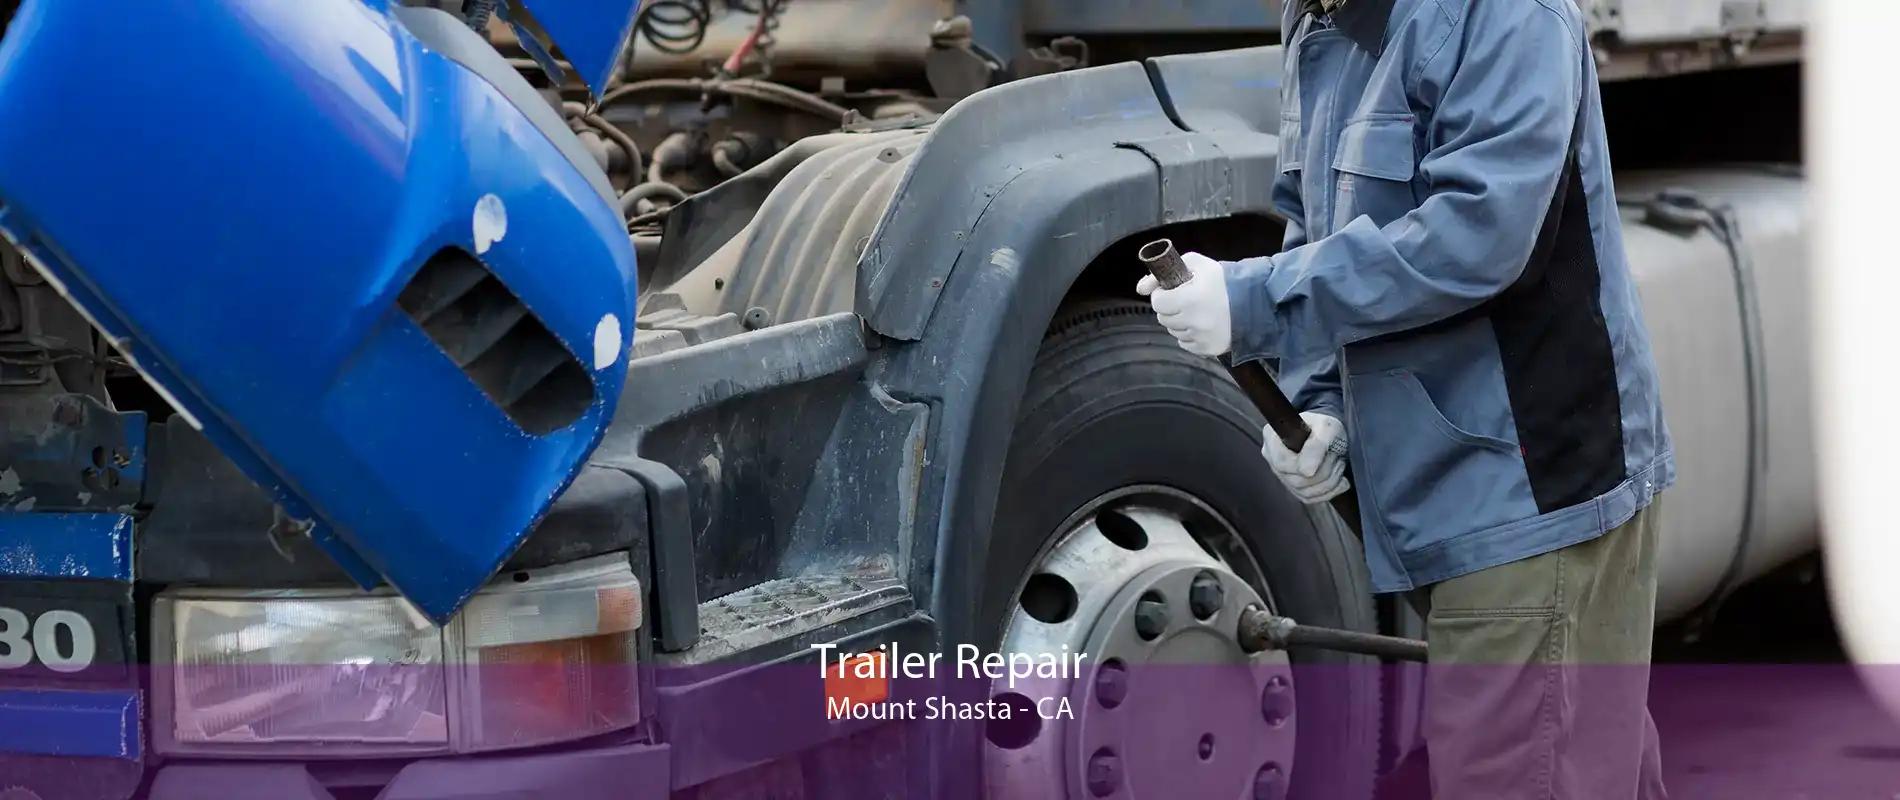 Trailer Repair Mount Shasta - CA